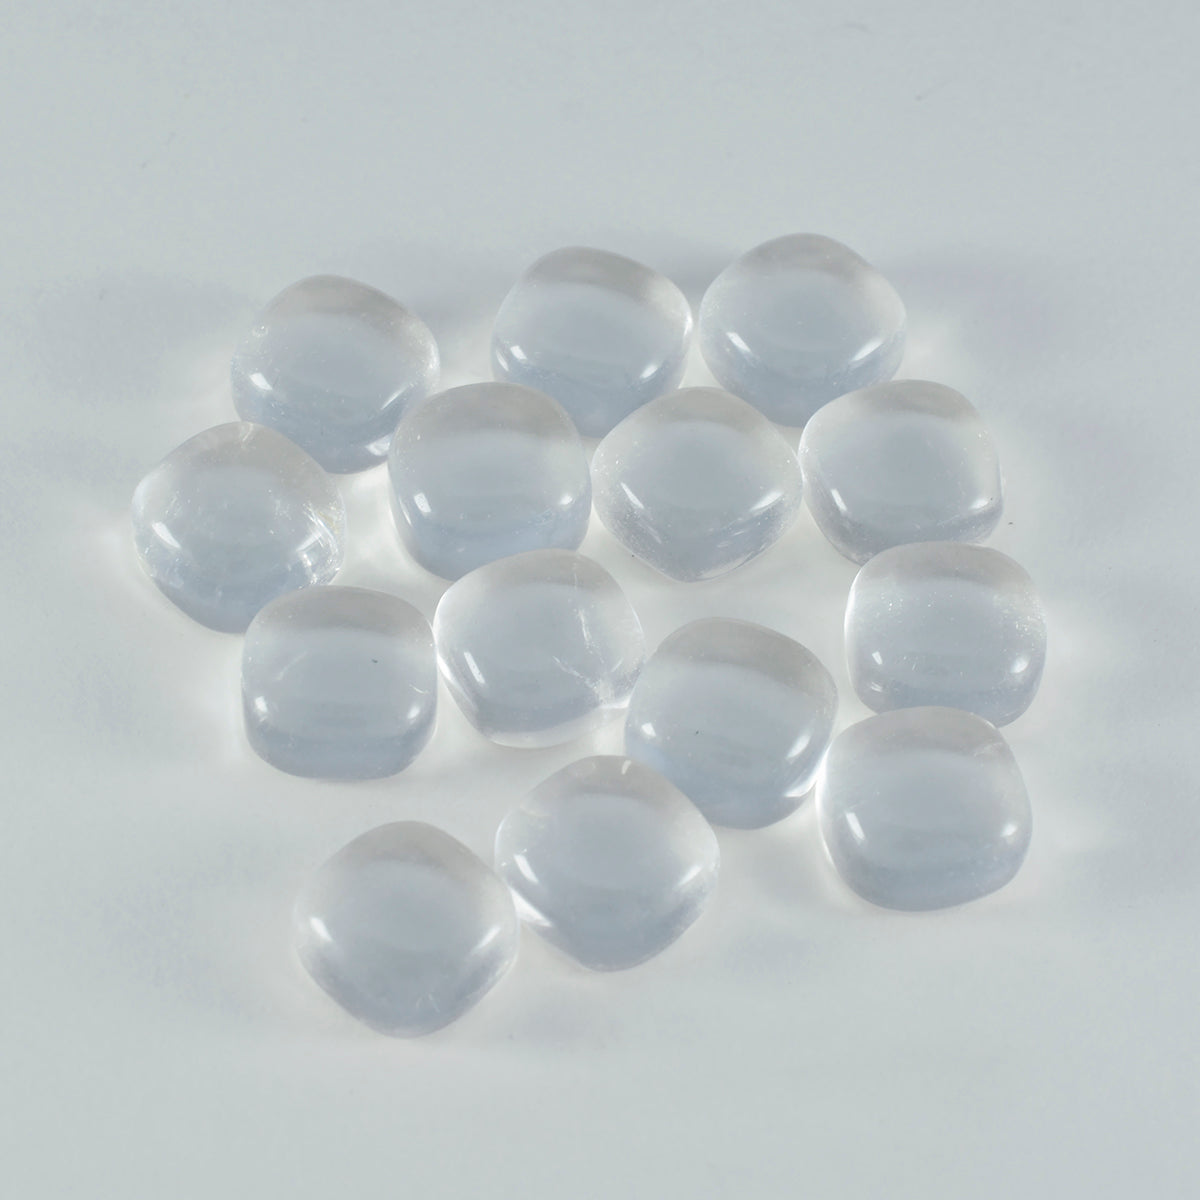 Riyogems, 1 pieza, cabujón de cristal de cuarzo blanco, 7x7mm, forma de cojín, gema suelta de buena calidad